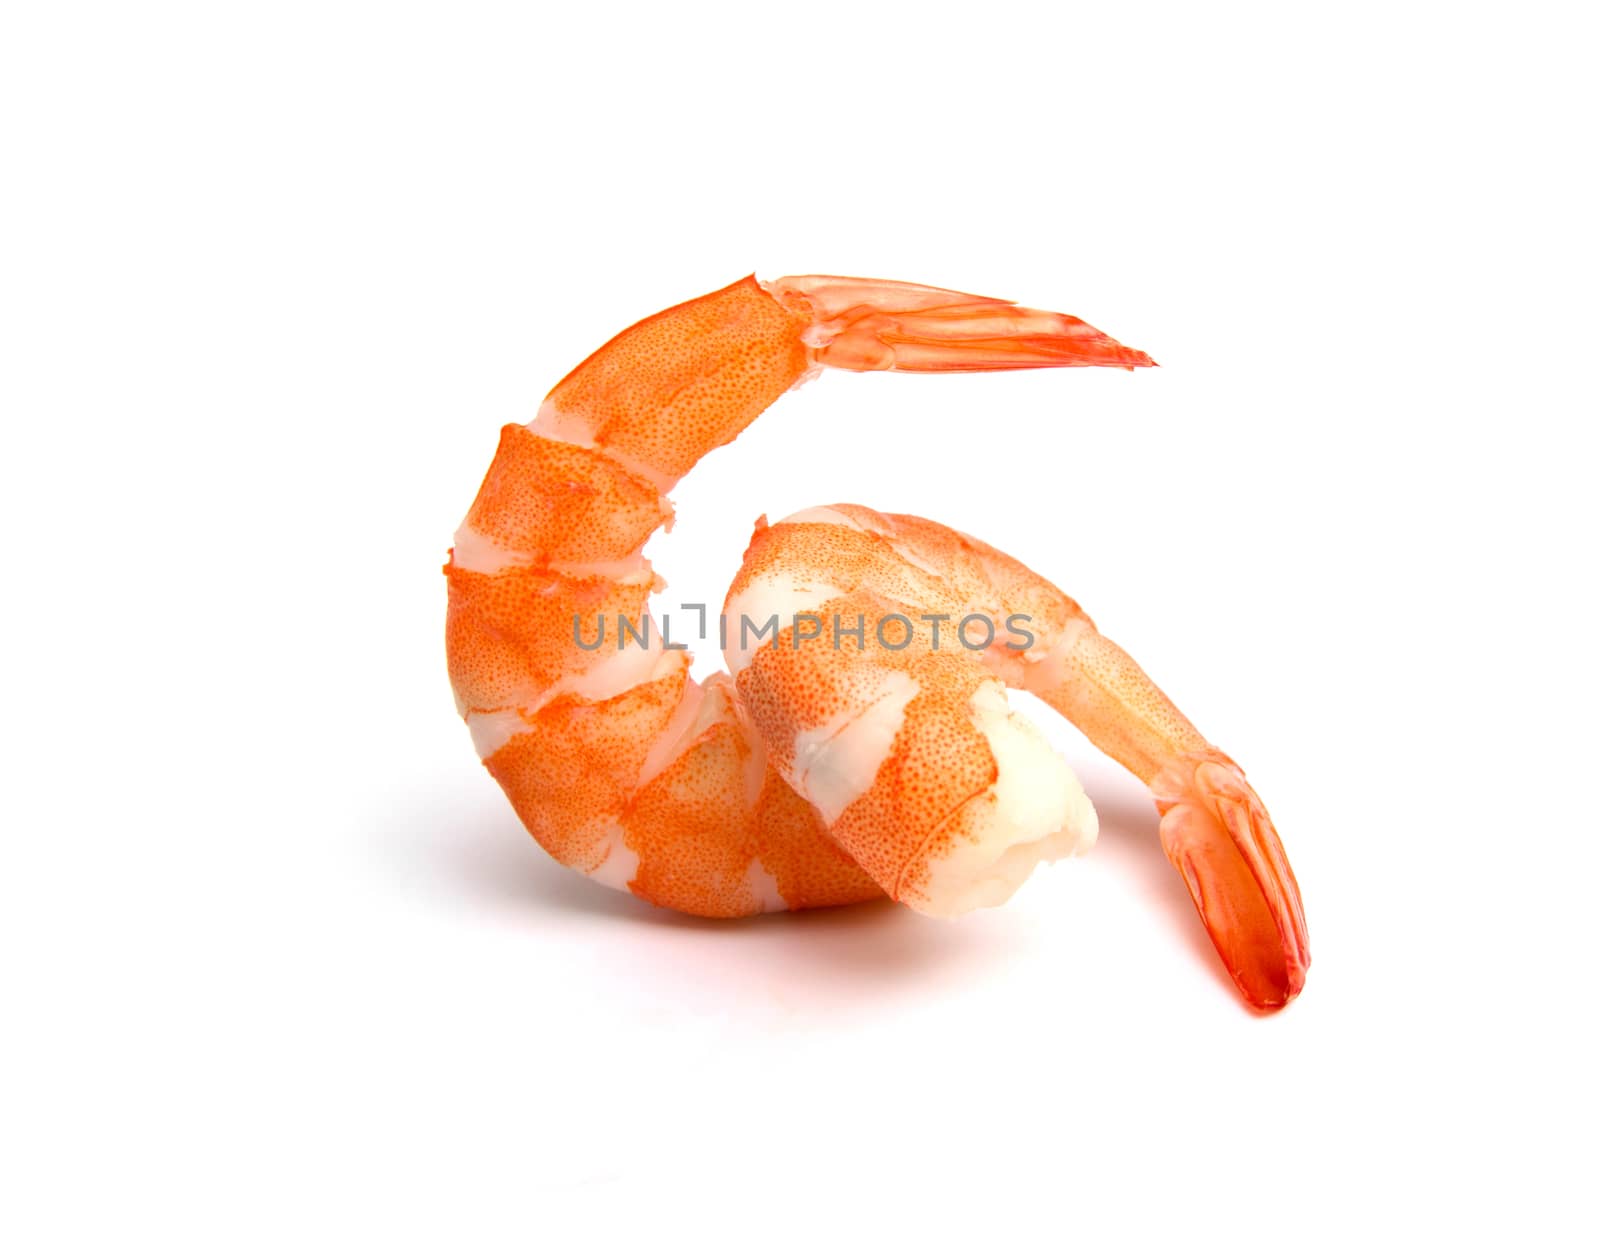 orange shrimps isolated on a white background